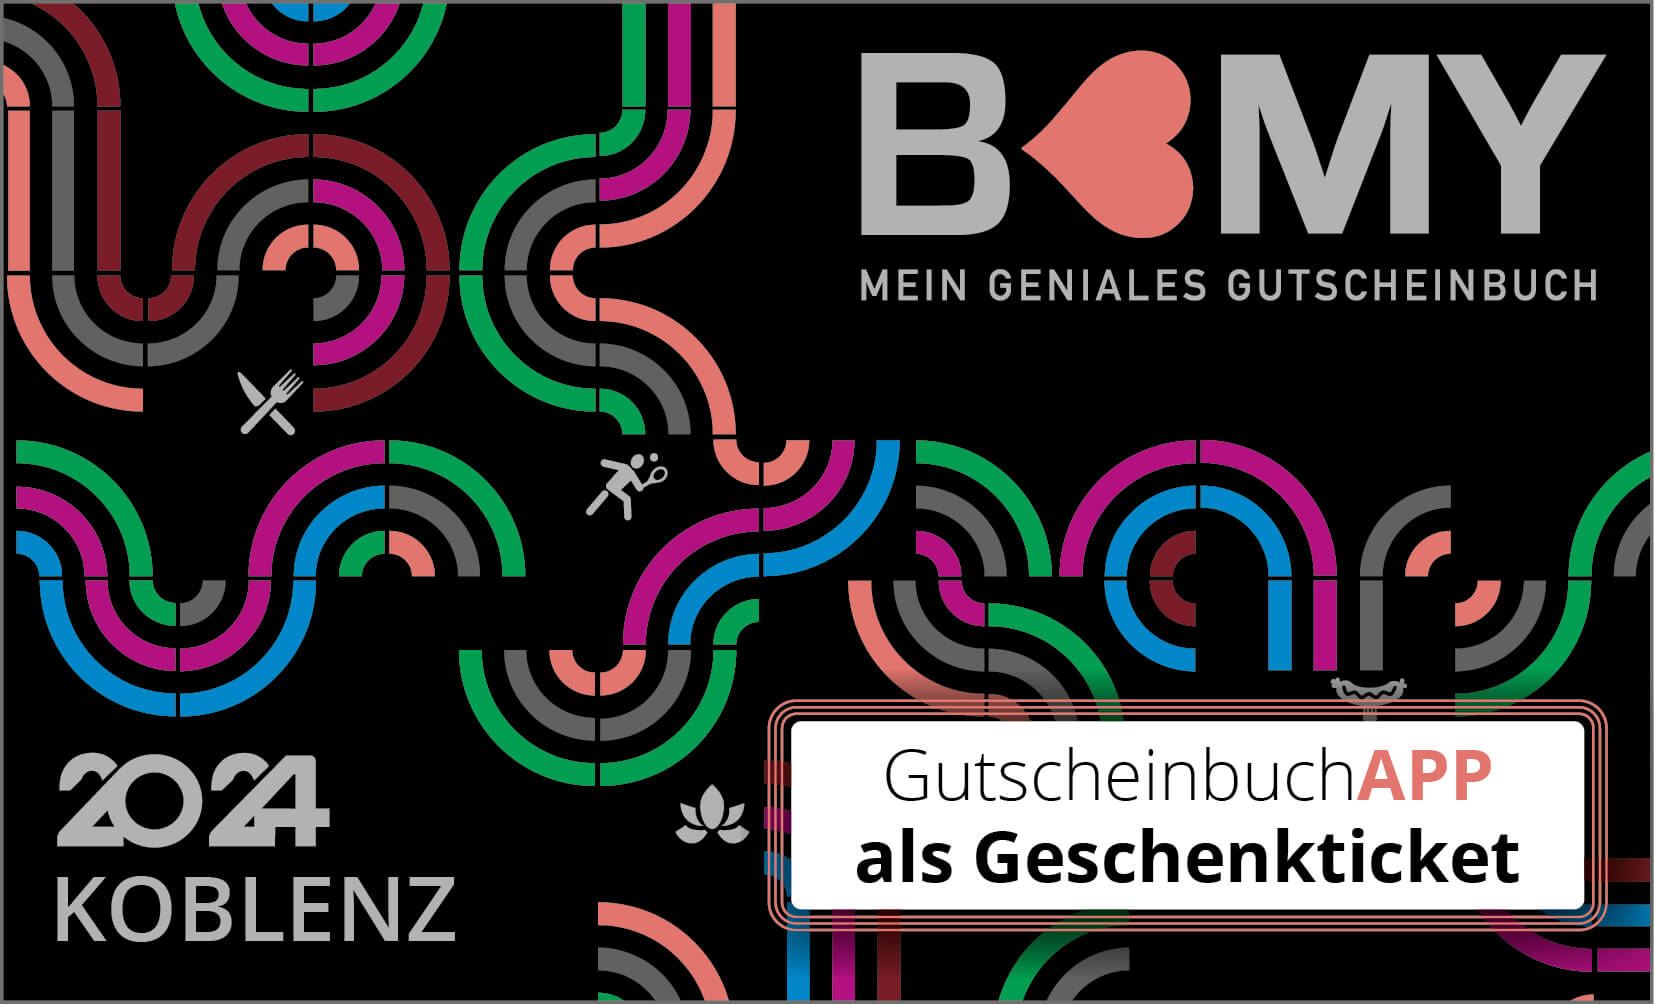 B-MY Koblenz - Gutscheinbuch APP Ticket